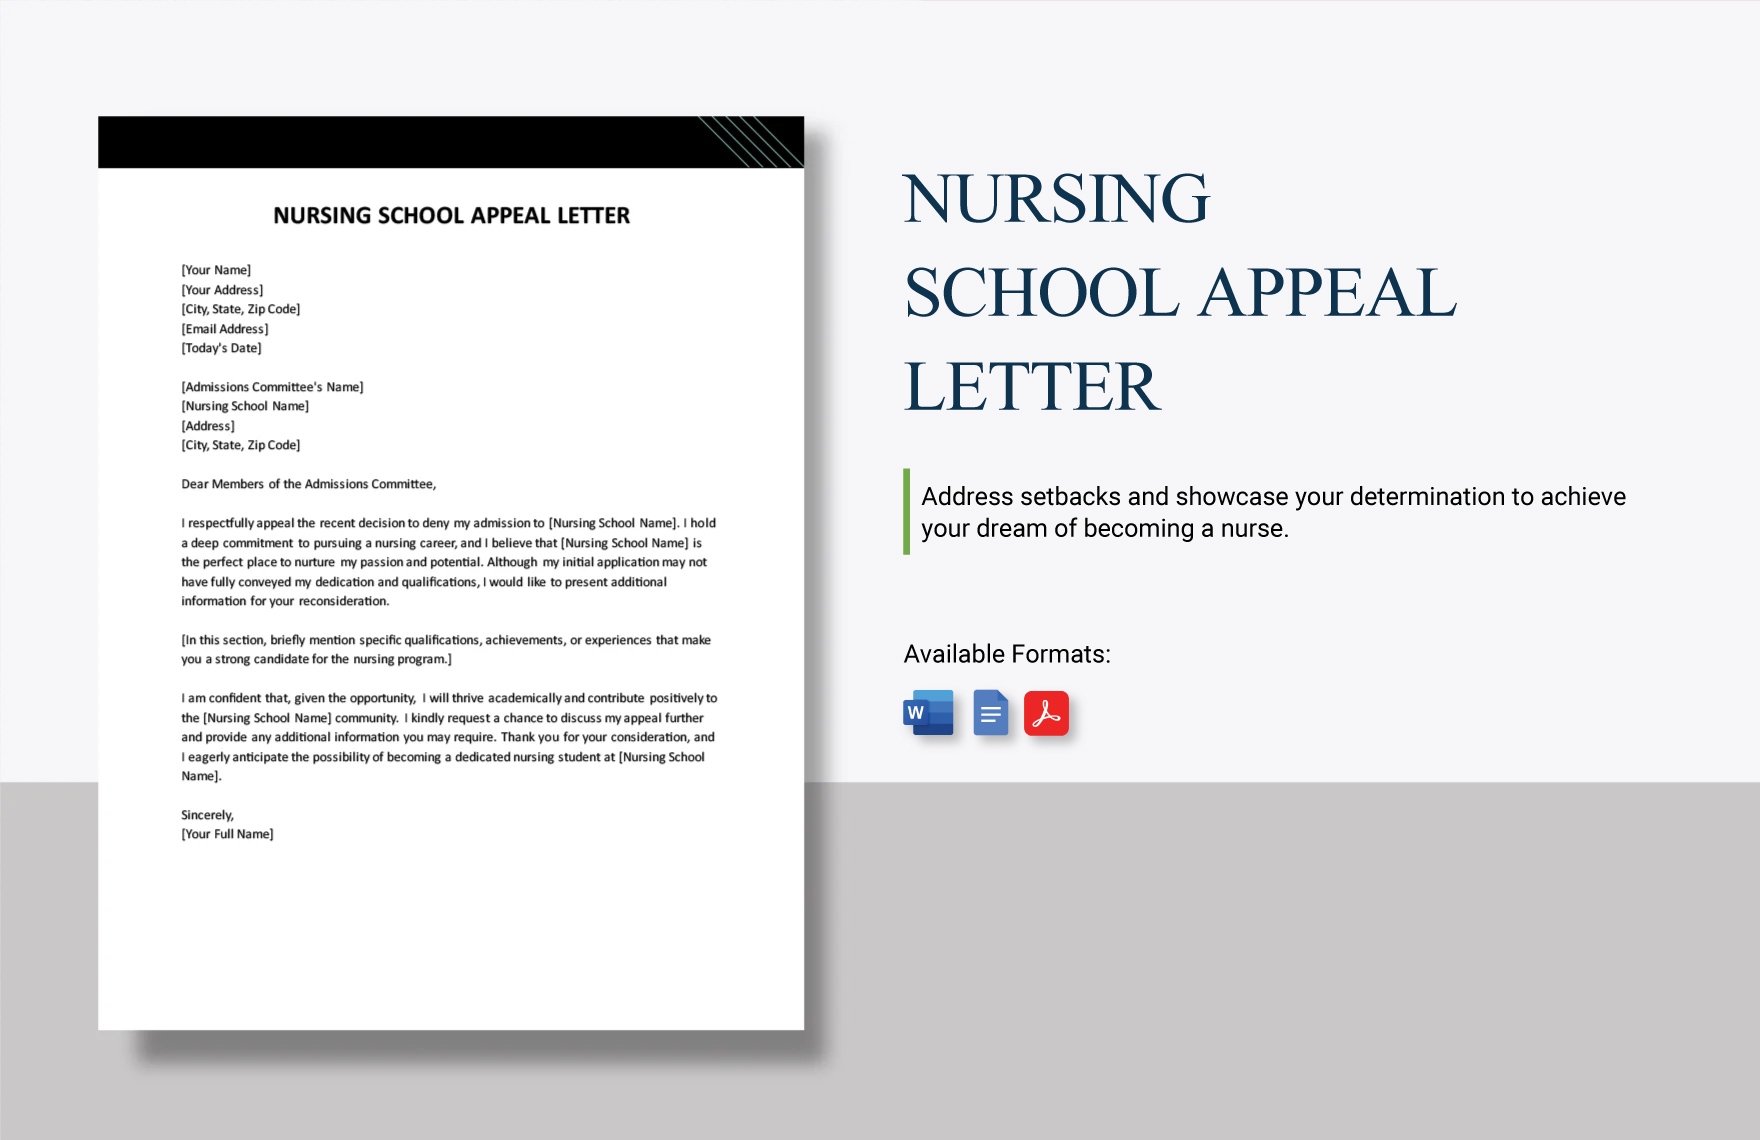 Nursing School Appeal Letter in Word, Google Docs, PDF